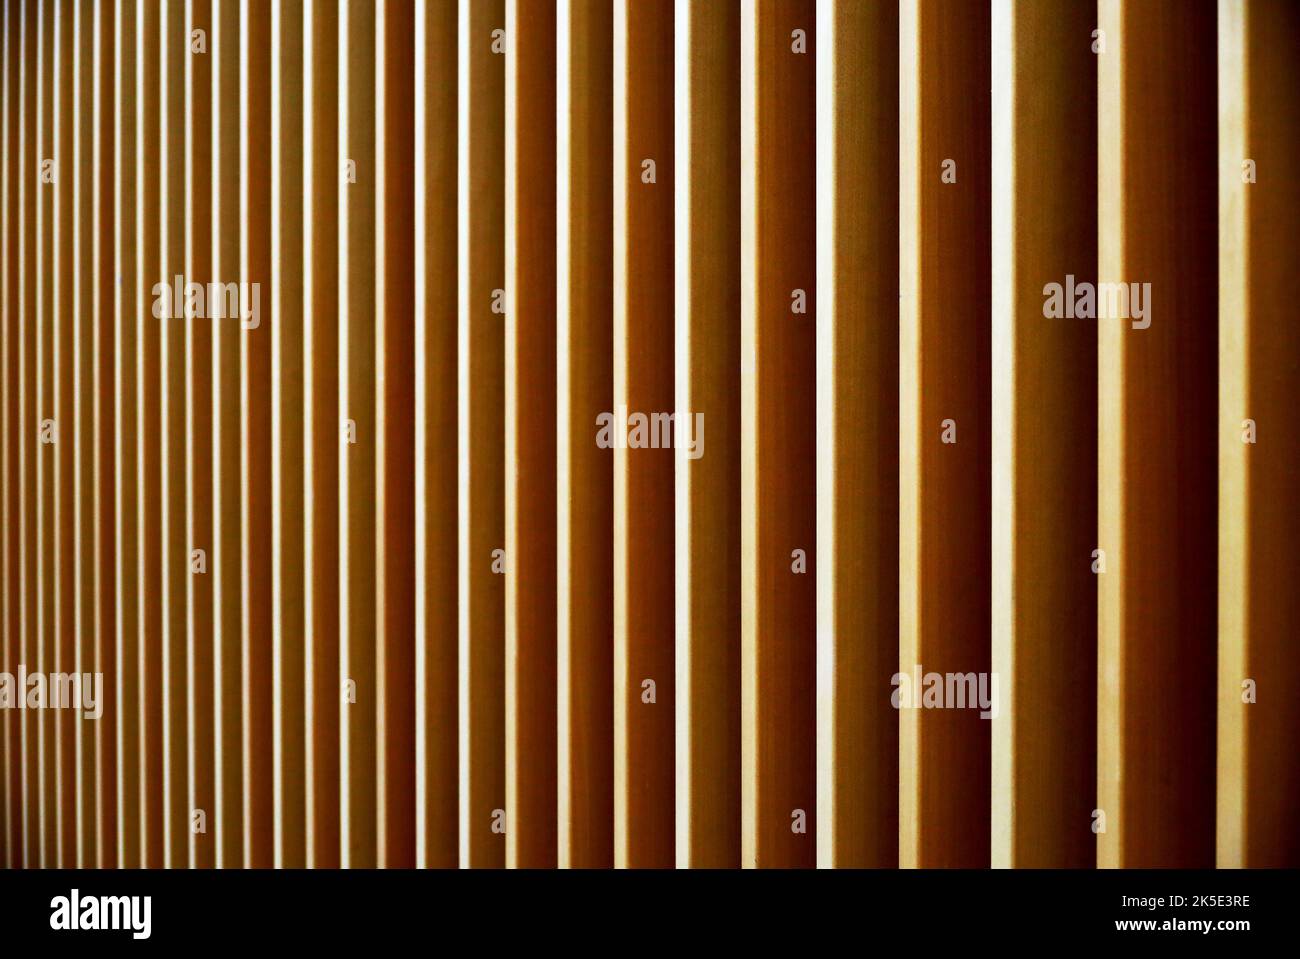 Decoración de la pared diseñada arreglando la madera uniformemente en la dirección vertical Foto de stock